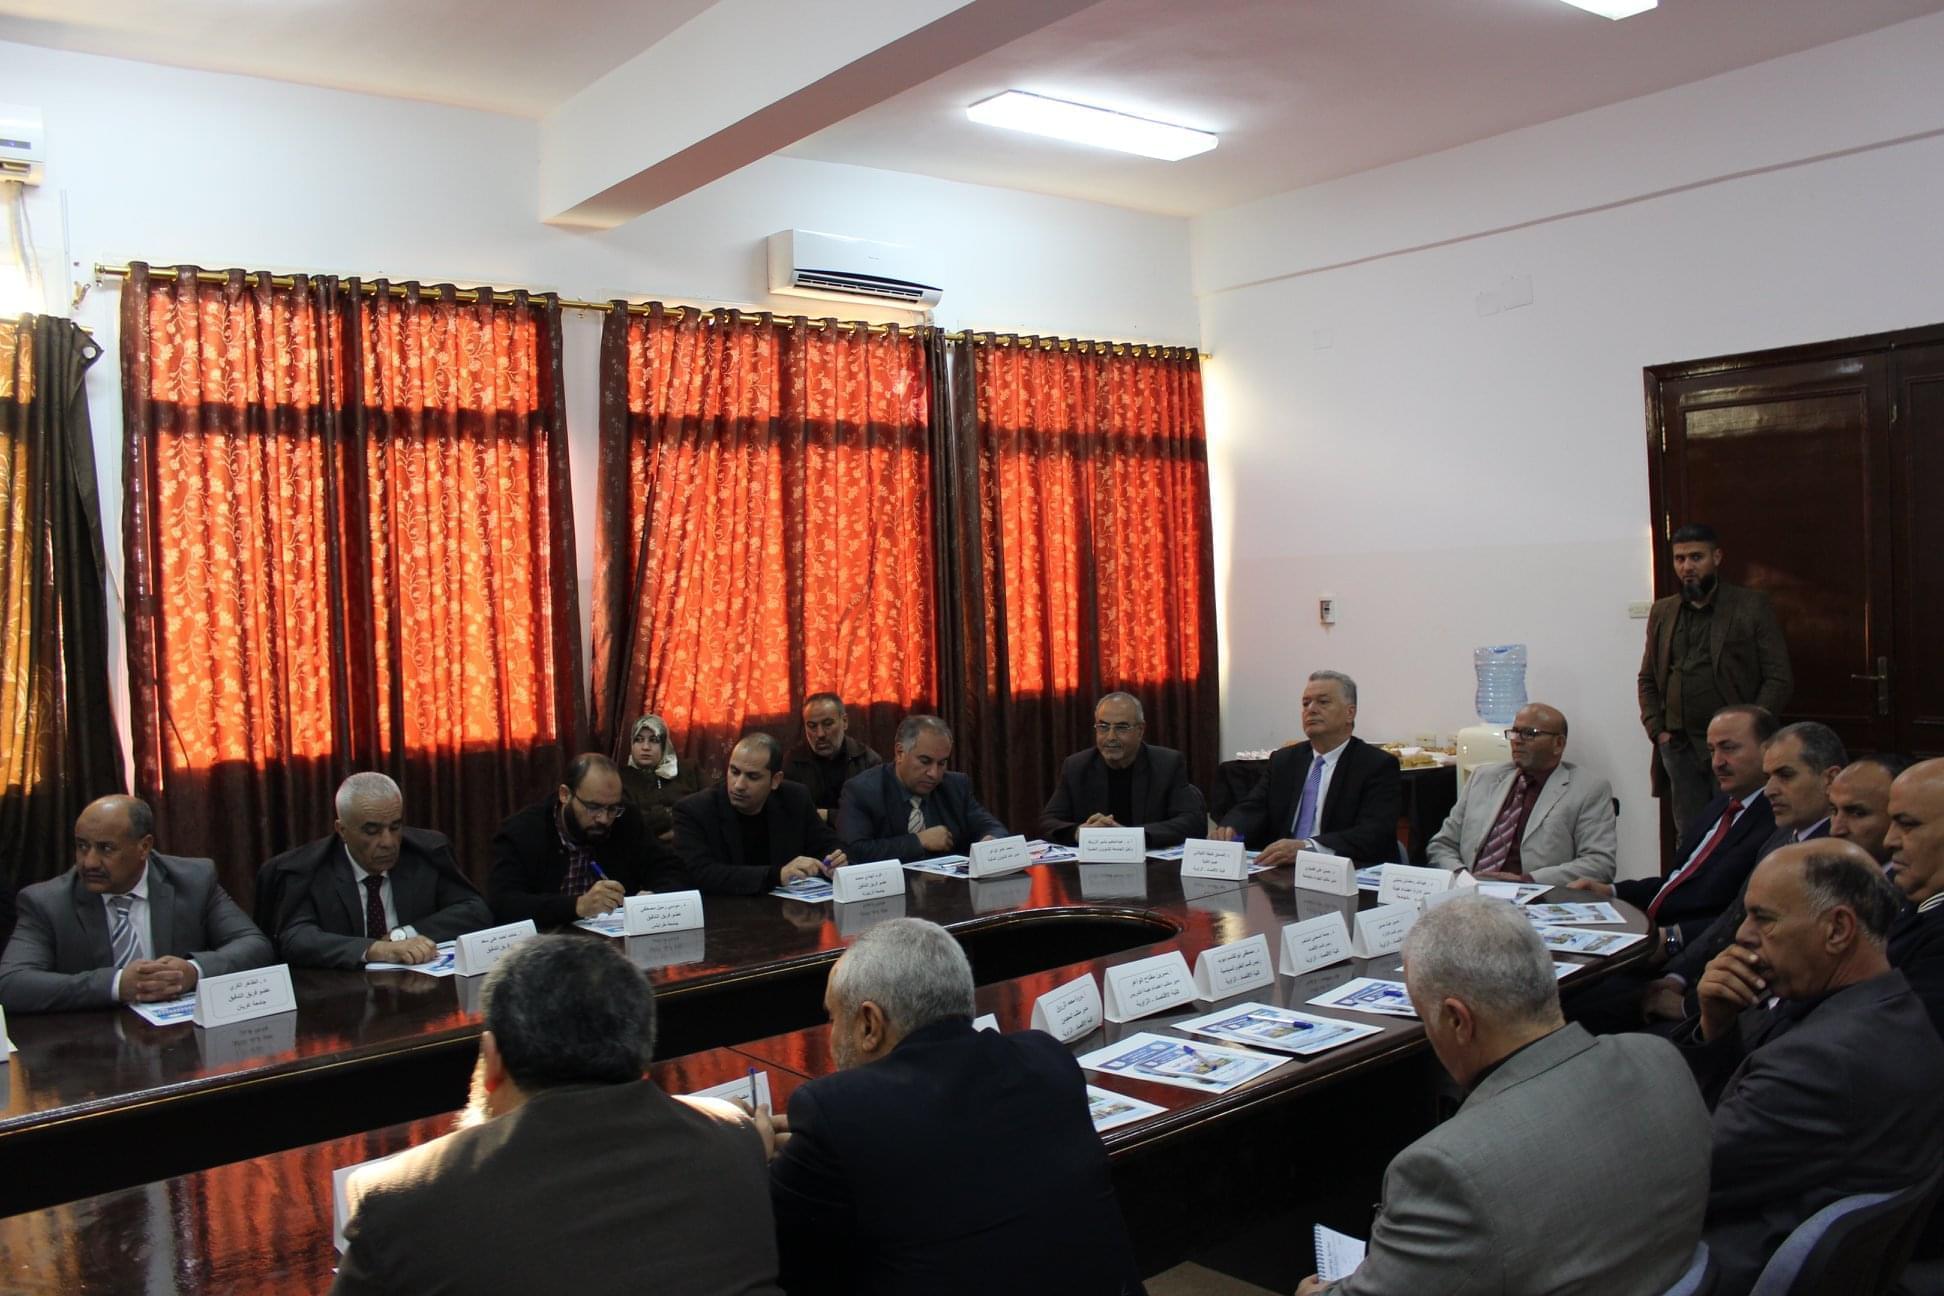  زيارة فريق التدقيق بمركز ضمان جودة واعتماد المؤسسات التعليمية والتدريبية في ليبيا لجامعة الزاوية